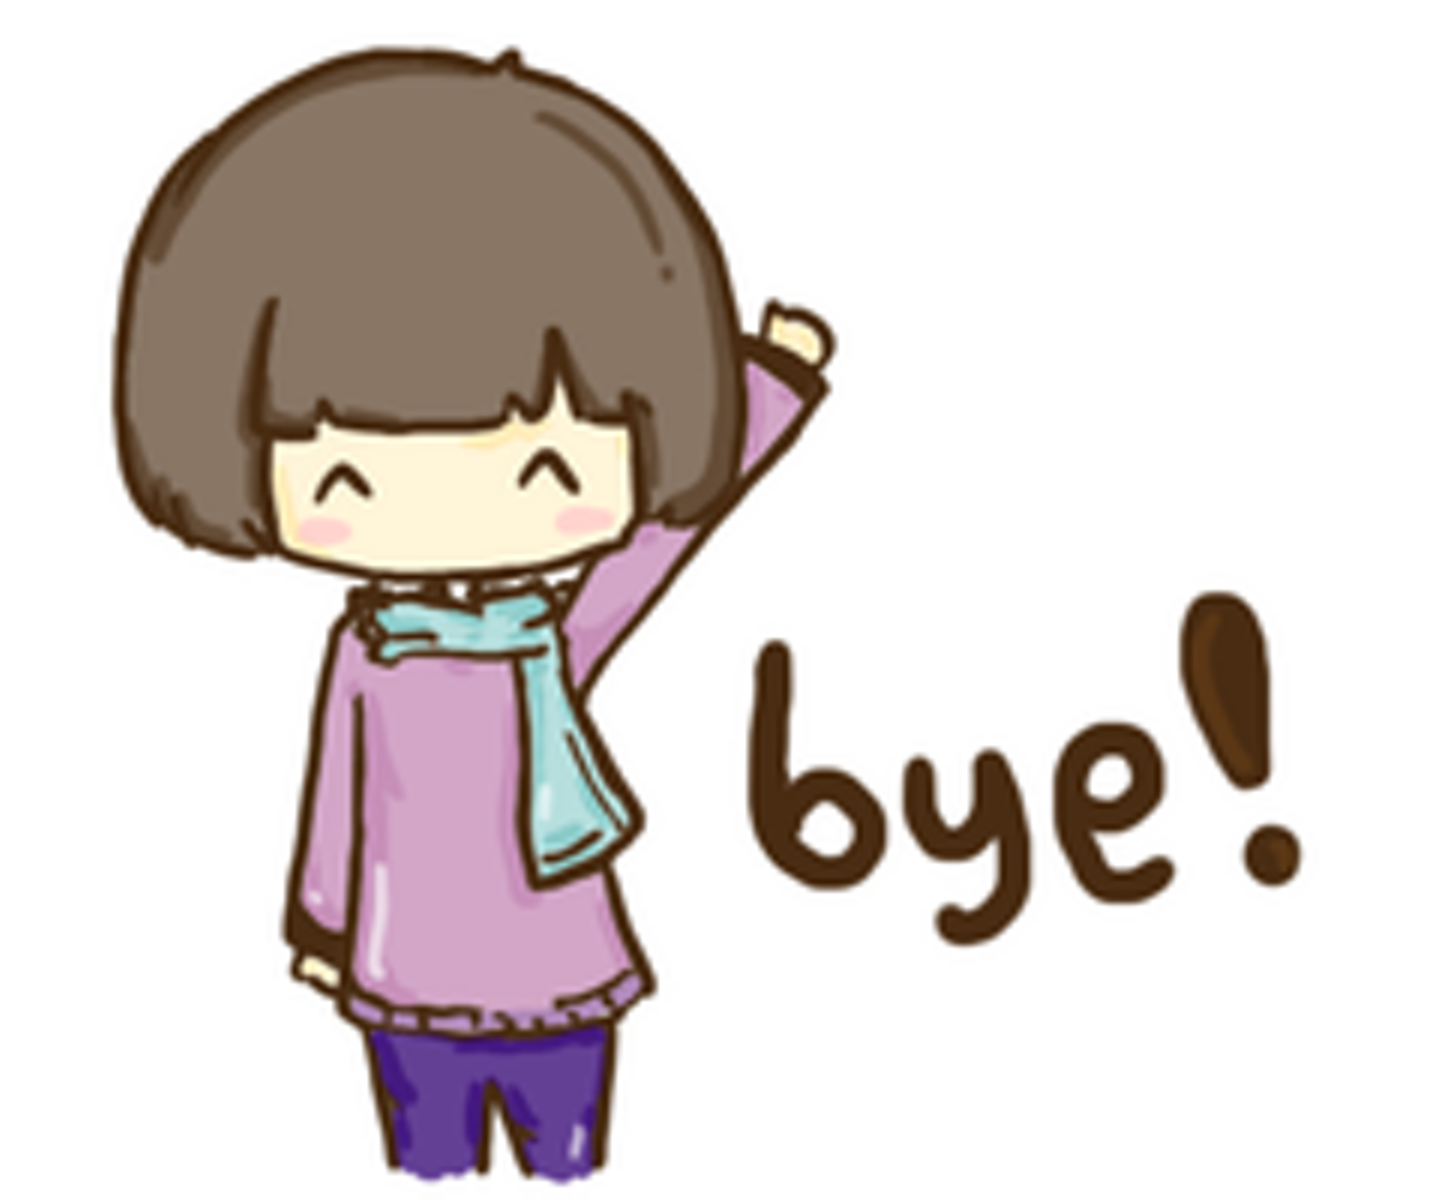 Bye bye phonk